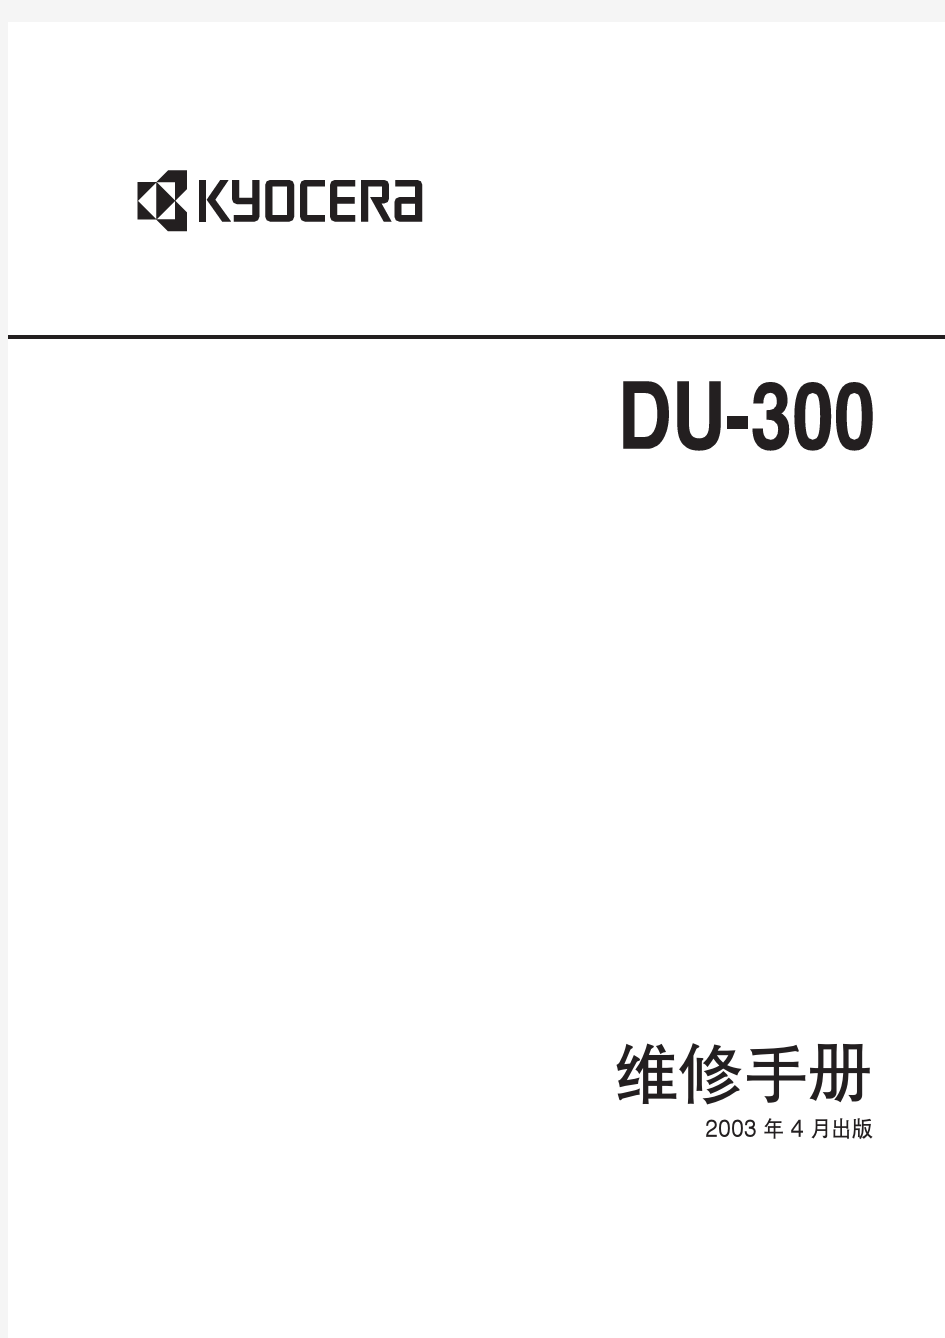 京瓷维修手册DU-300_SM